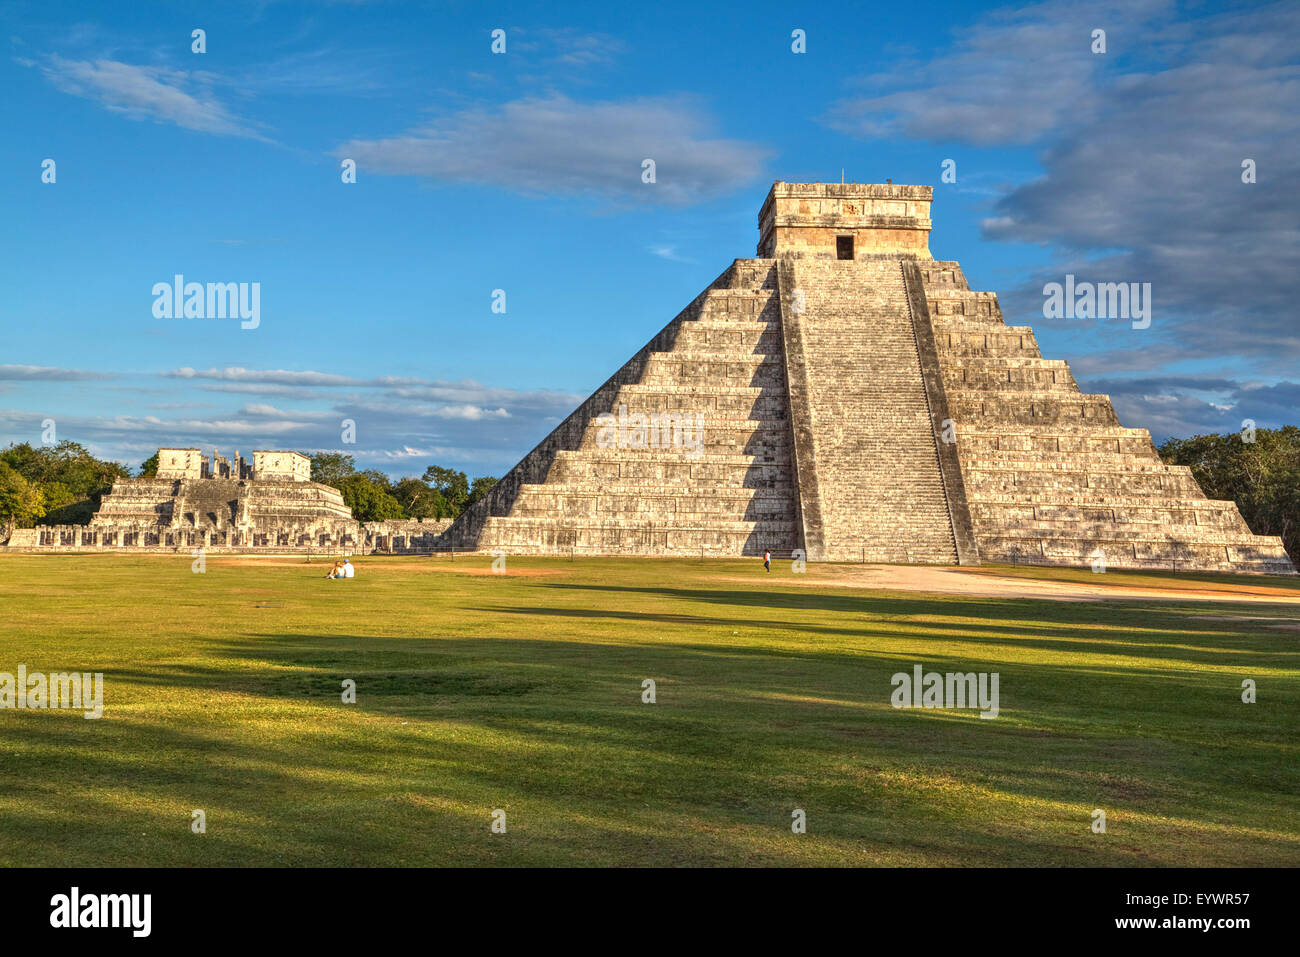 El Castillo (Pyramide de Kulkulcan), Chichen Itza, Site du patrimoine mondial de l'UNESCO, Yucatan, Mexique, Amérique du Nord Banque D'Images